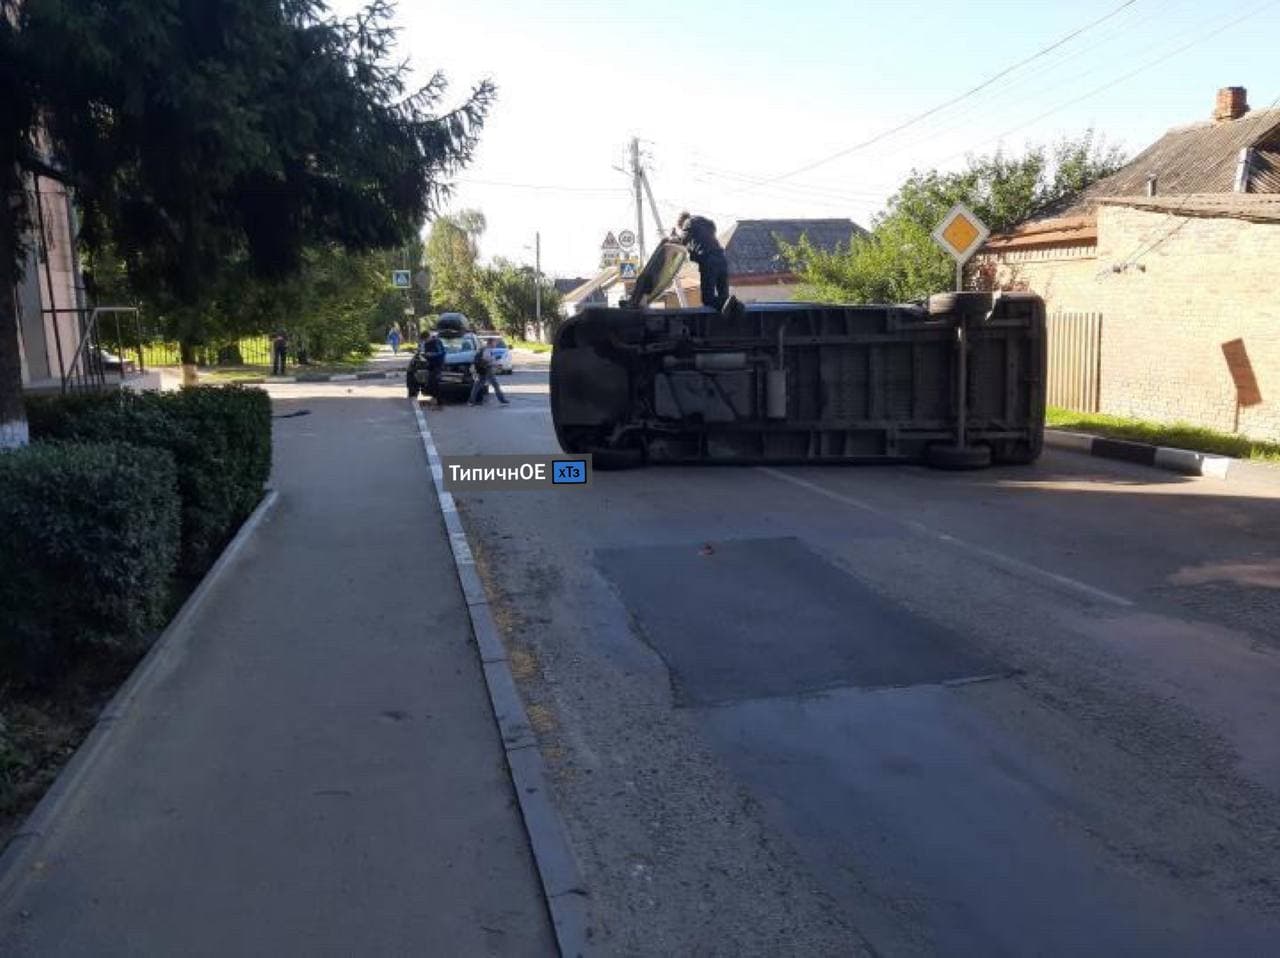 Авария на Алексеевке: перевернутый микроавтобус лежит посреди дороги (фото)